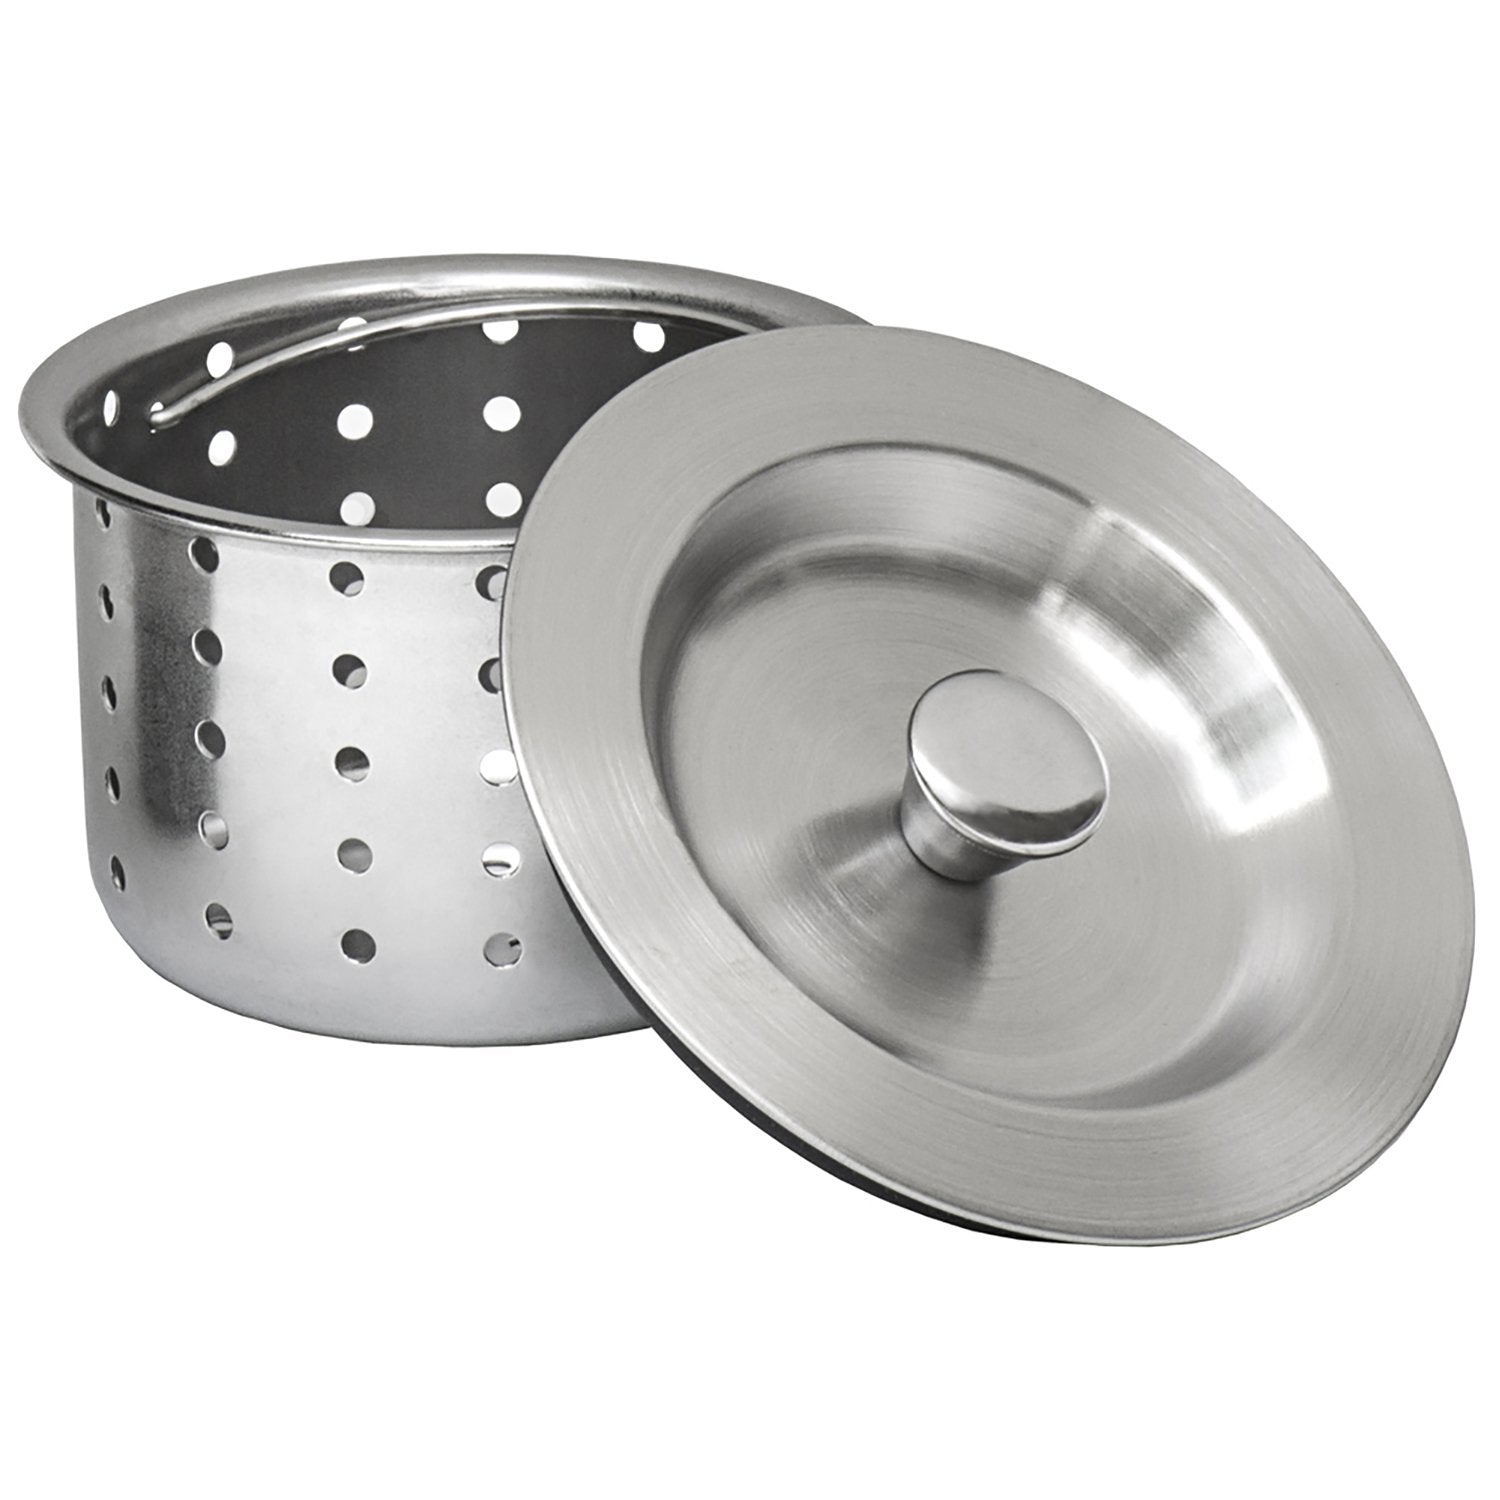 Ruvati RVA1025 Kitchen Sink Basket Strainer in Stainless Steel